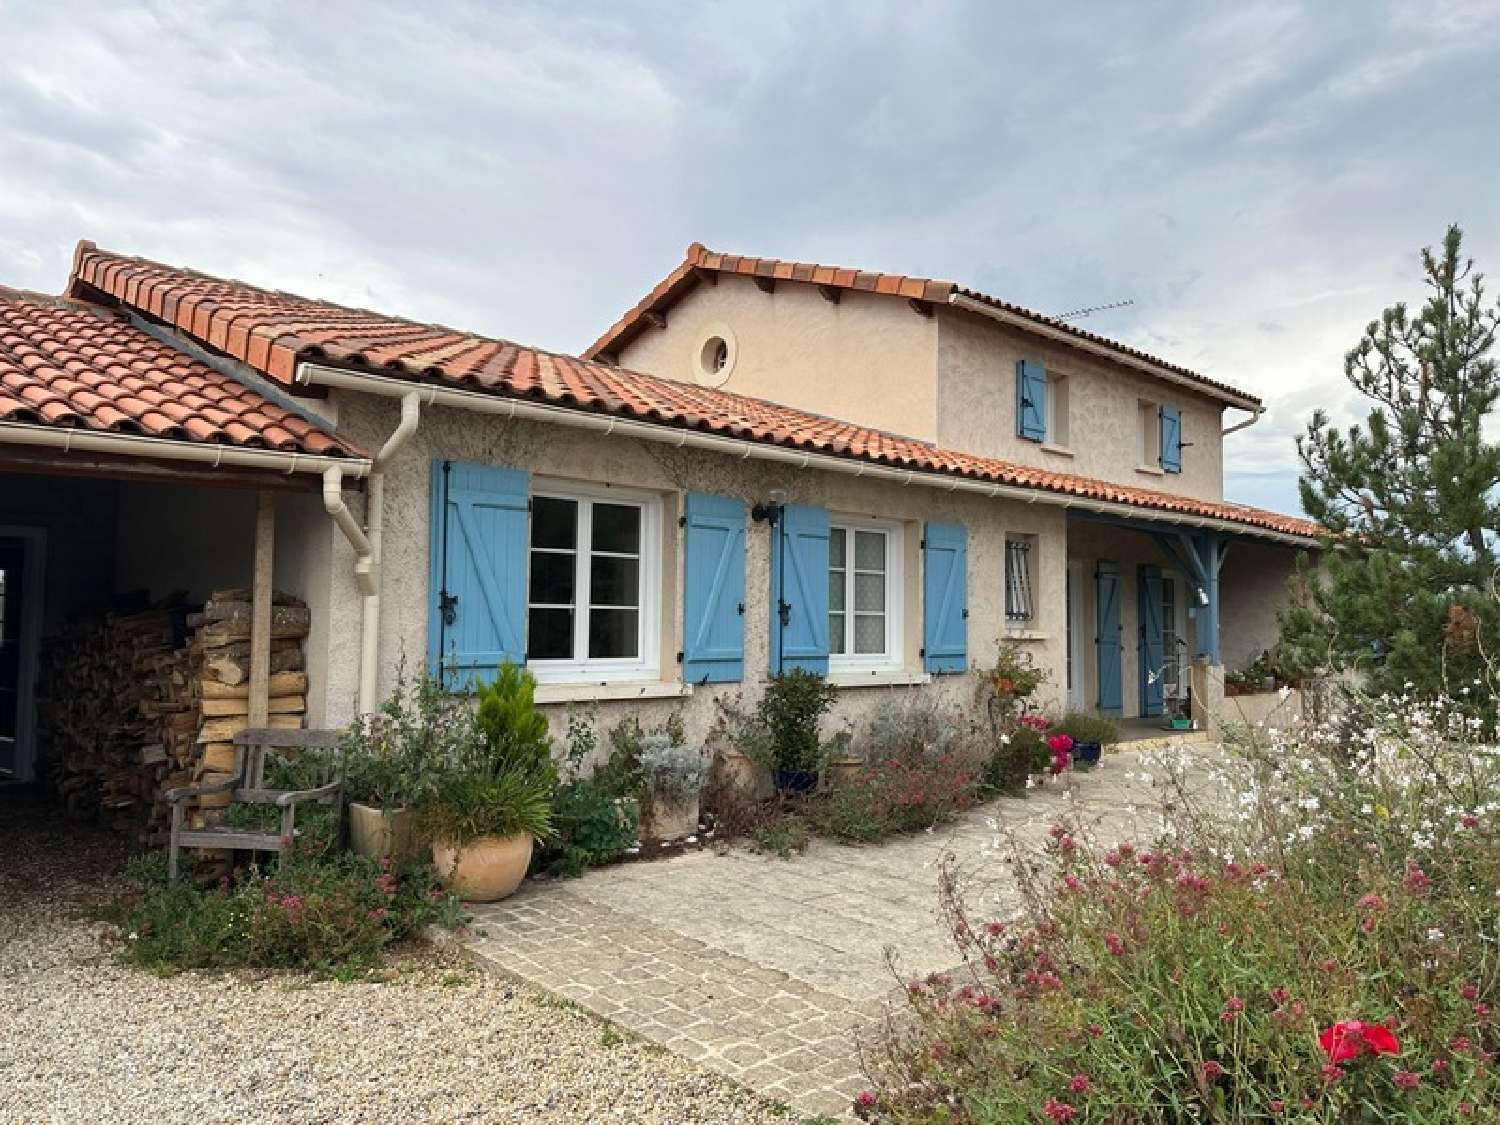  à vendre maison Montbron Charente 1